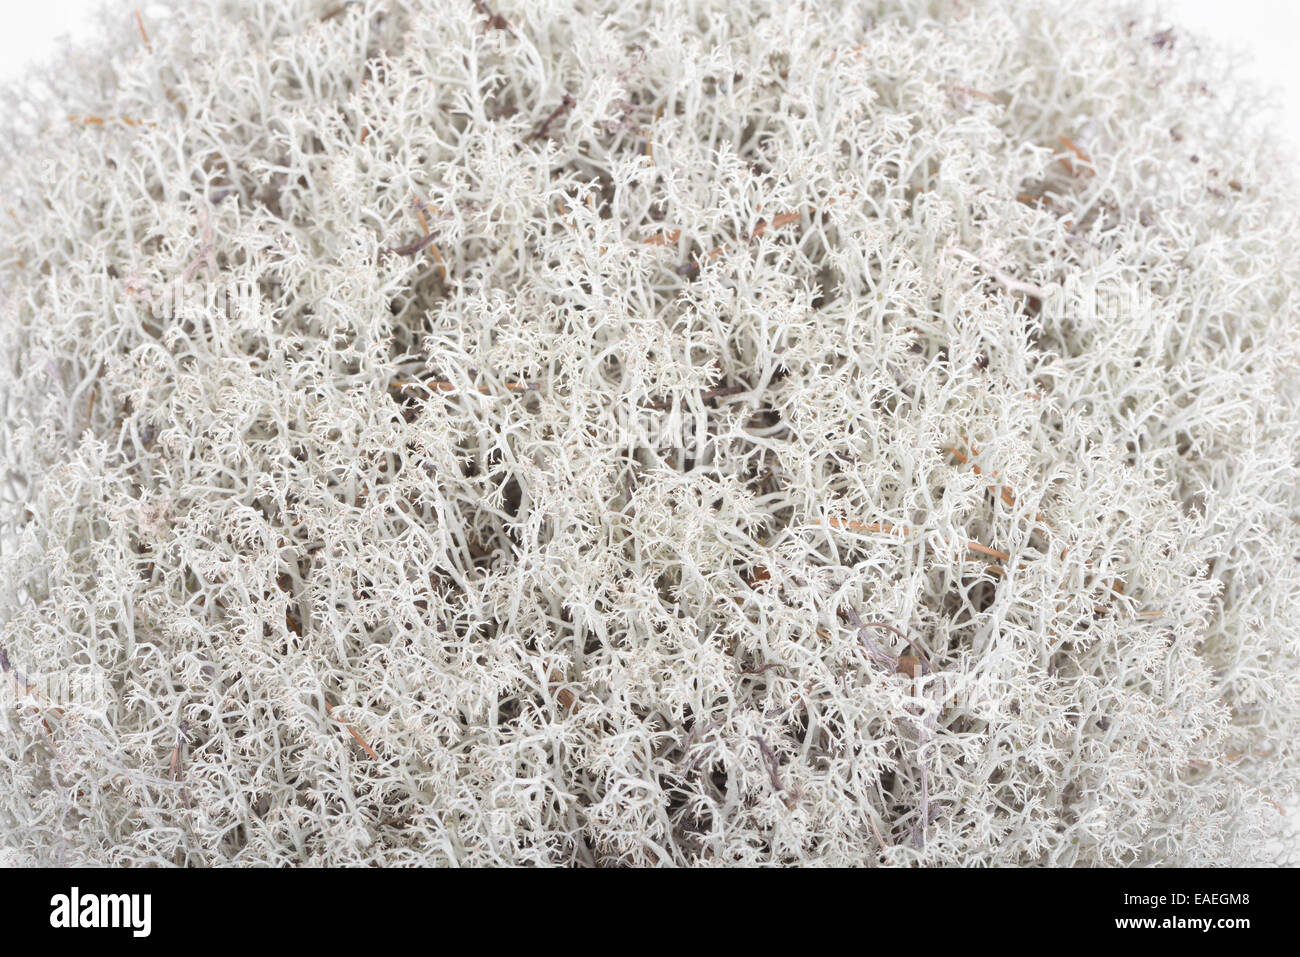 Licheni delle renne (Cladonia rangiferina), fruticose lichen appartenenti alla famiglia Cladoniaceae Foto Stock